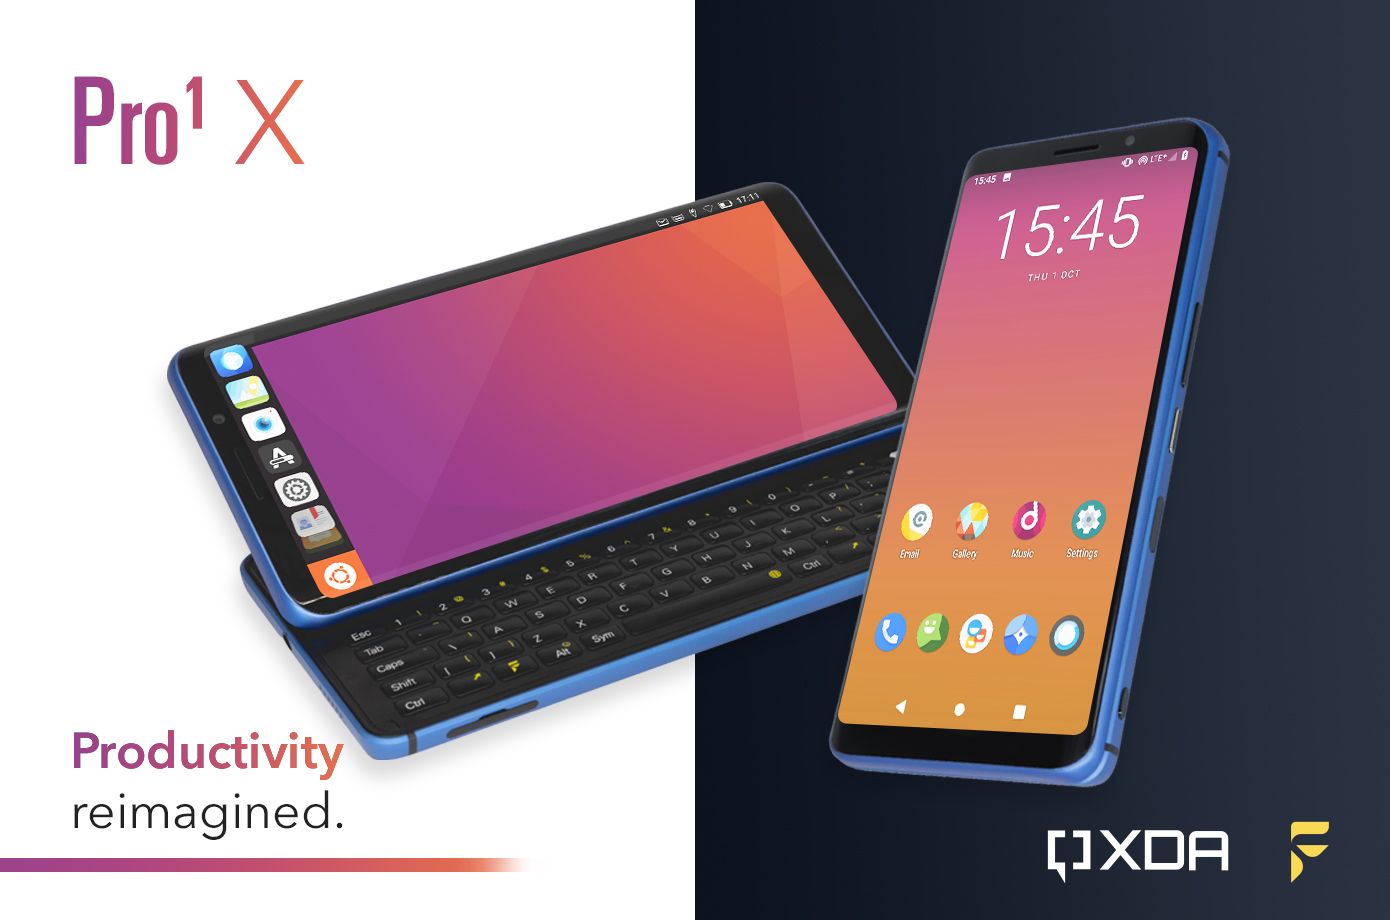 Diễn đàn công nghệ
XDA trình làng smartphone đầu tiên Pro1-X: Chạy được cả
LineageOS và Ubuntu Touch